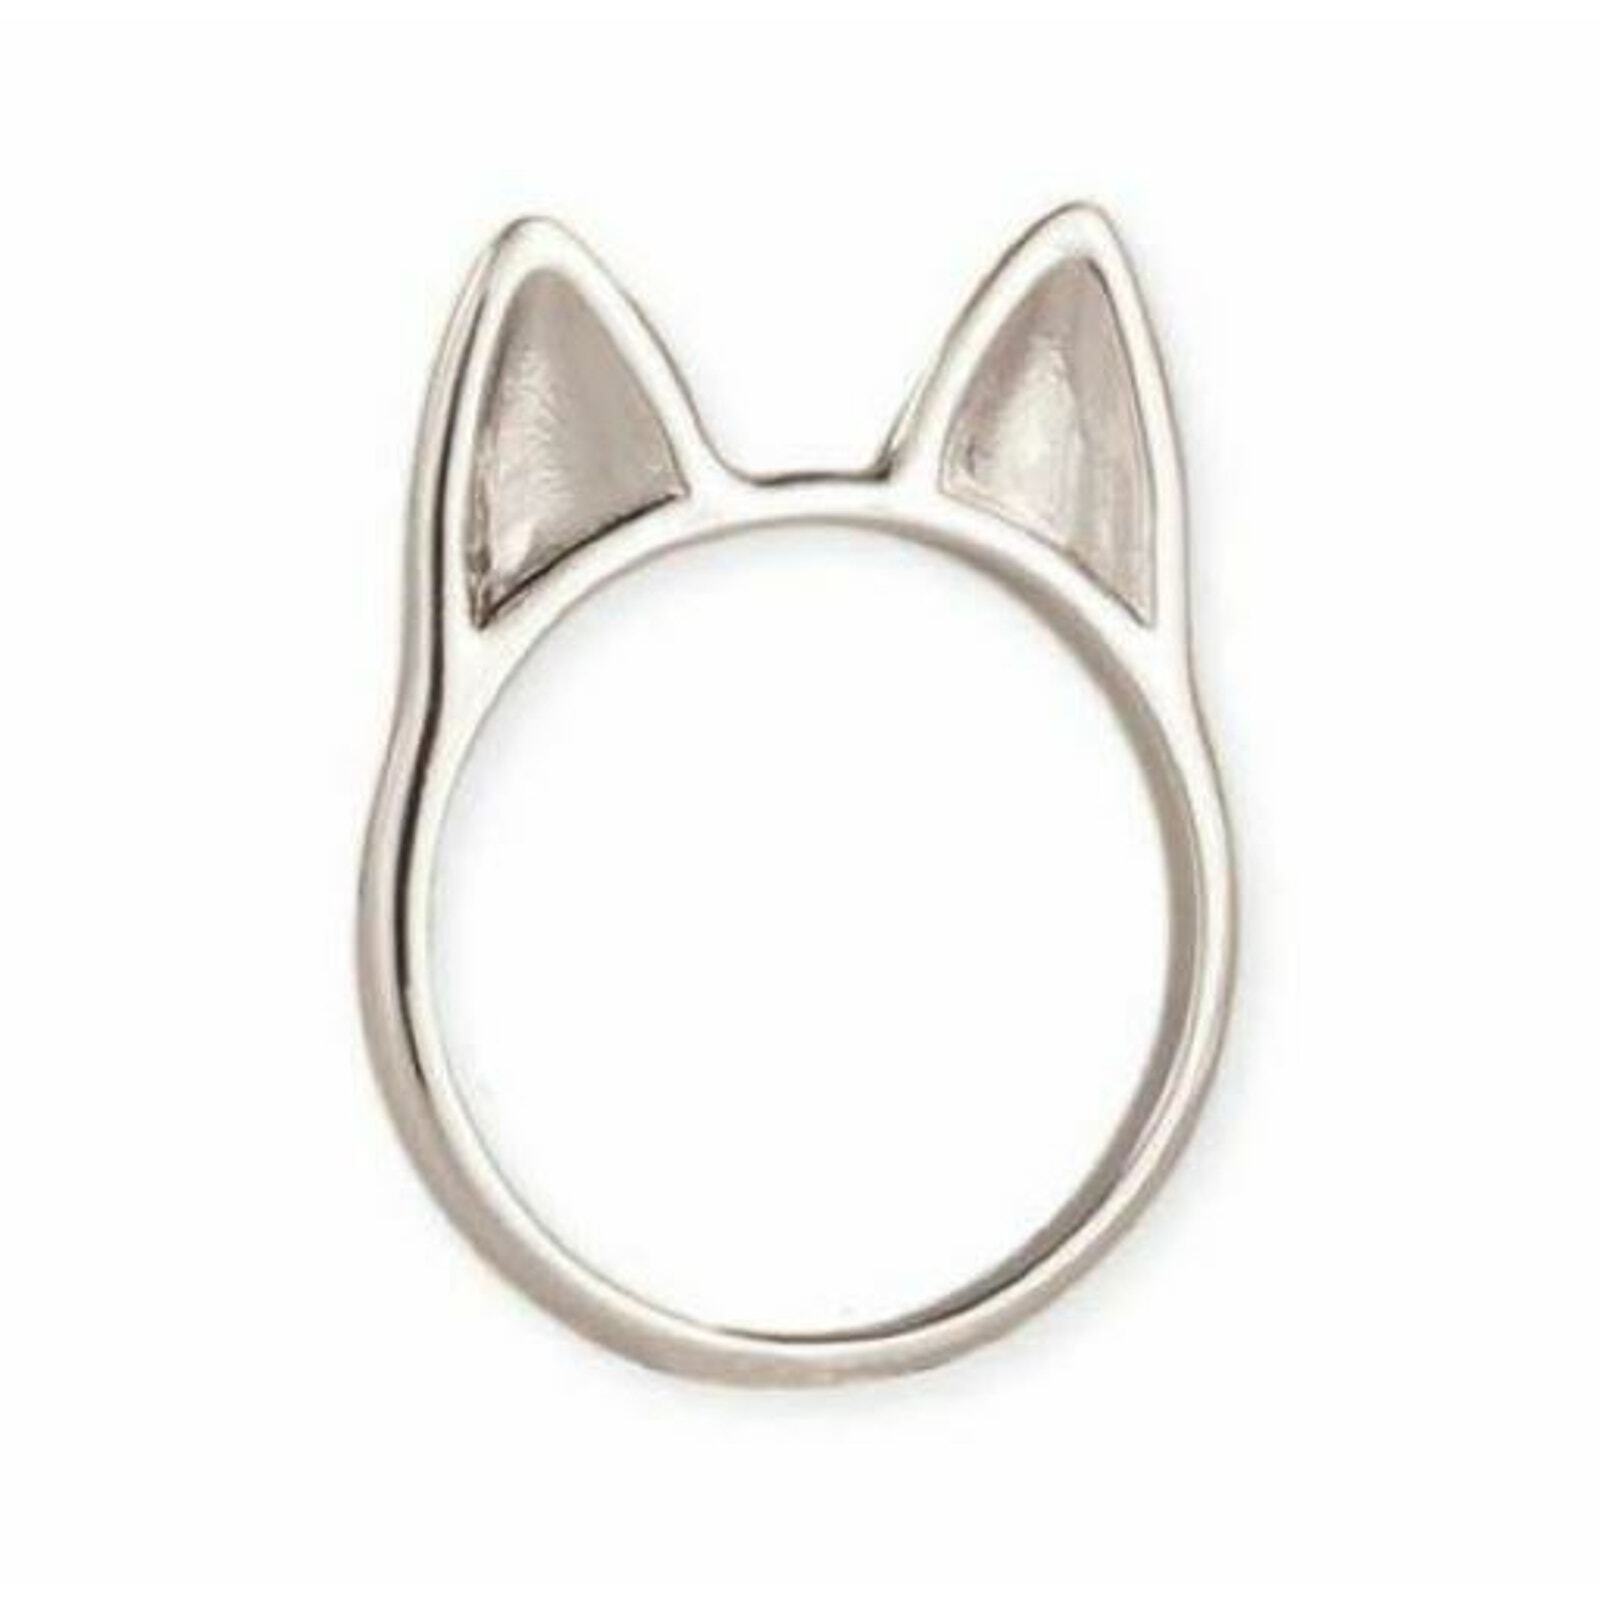 New Simply Feline Silver Cat Kitten Ears Ring sz 6 Cats Kittens Jewelry Gift